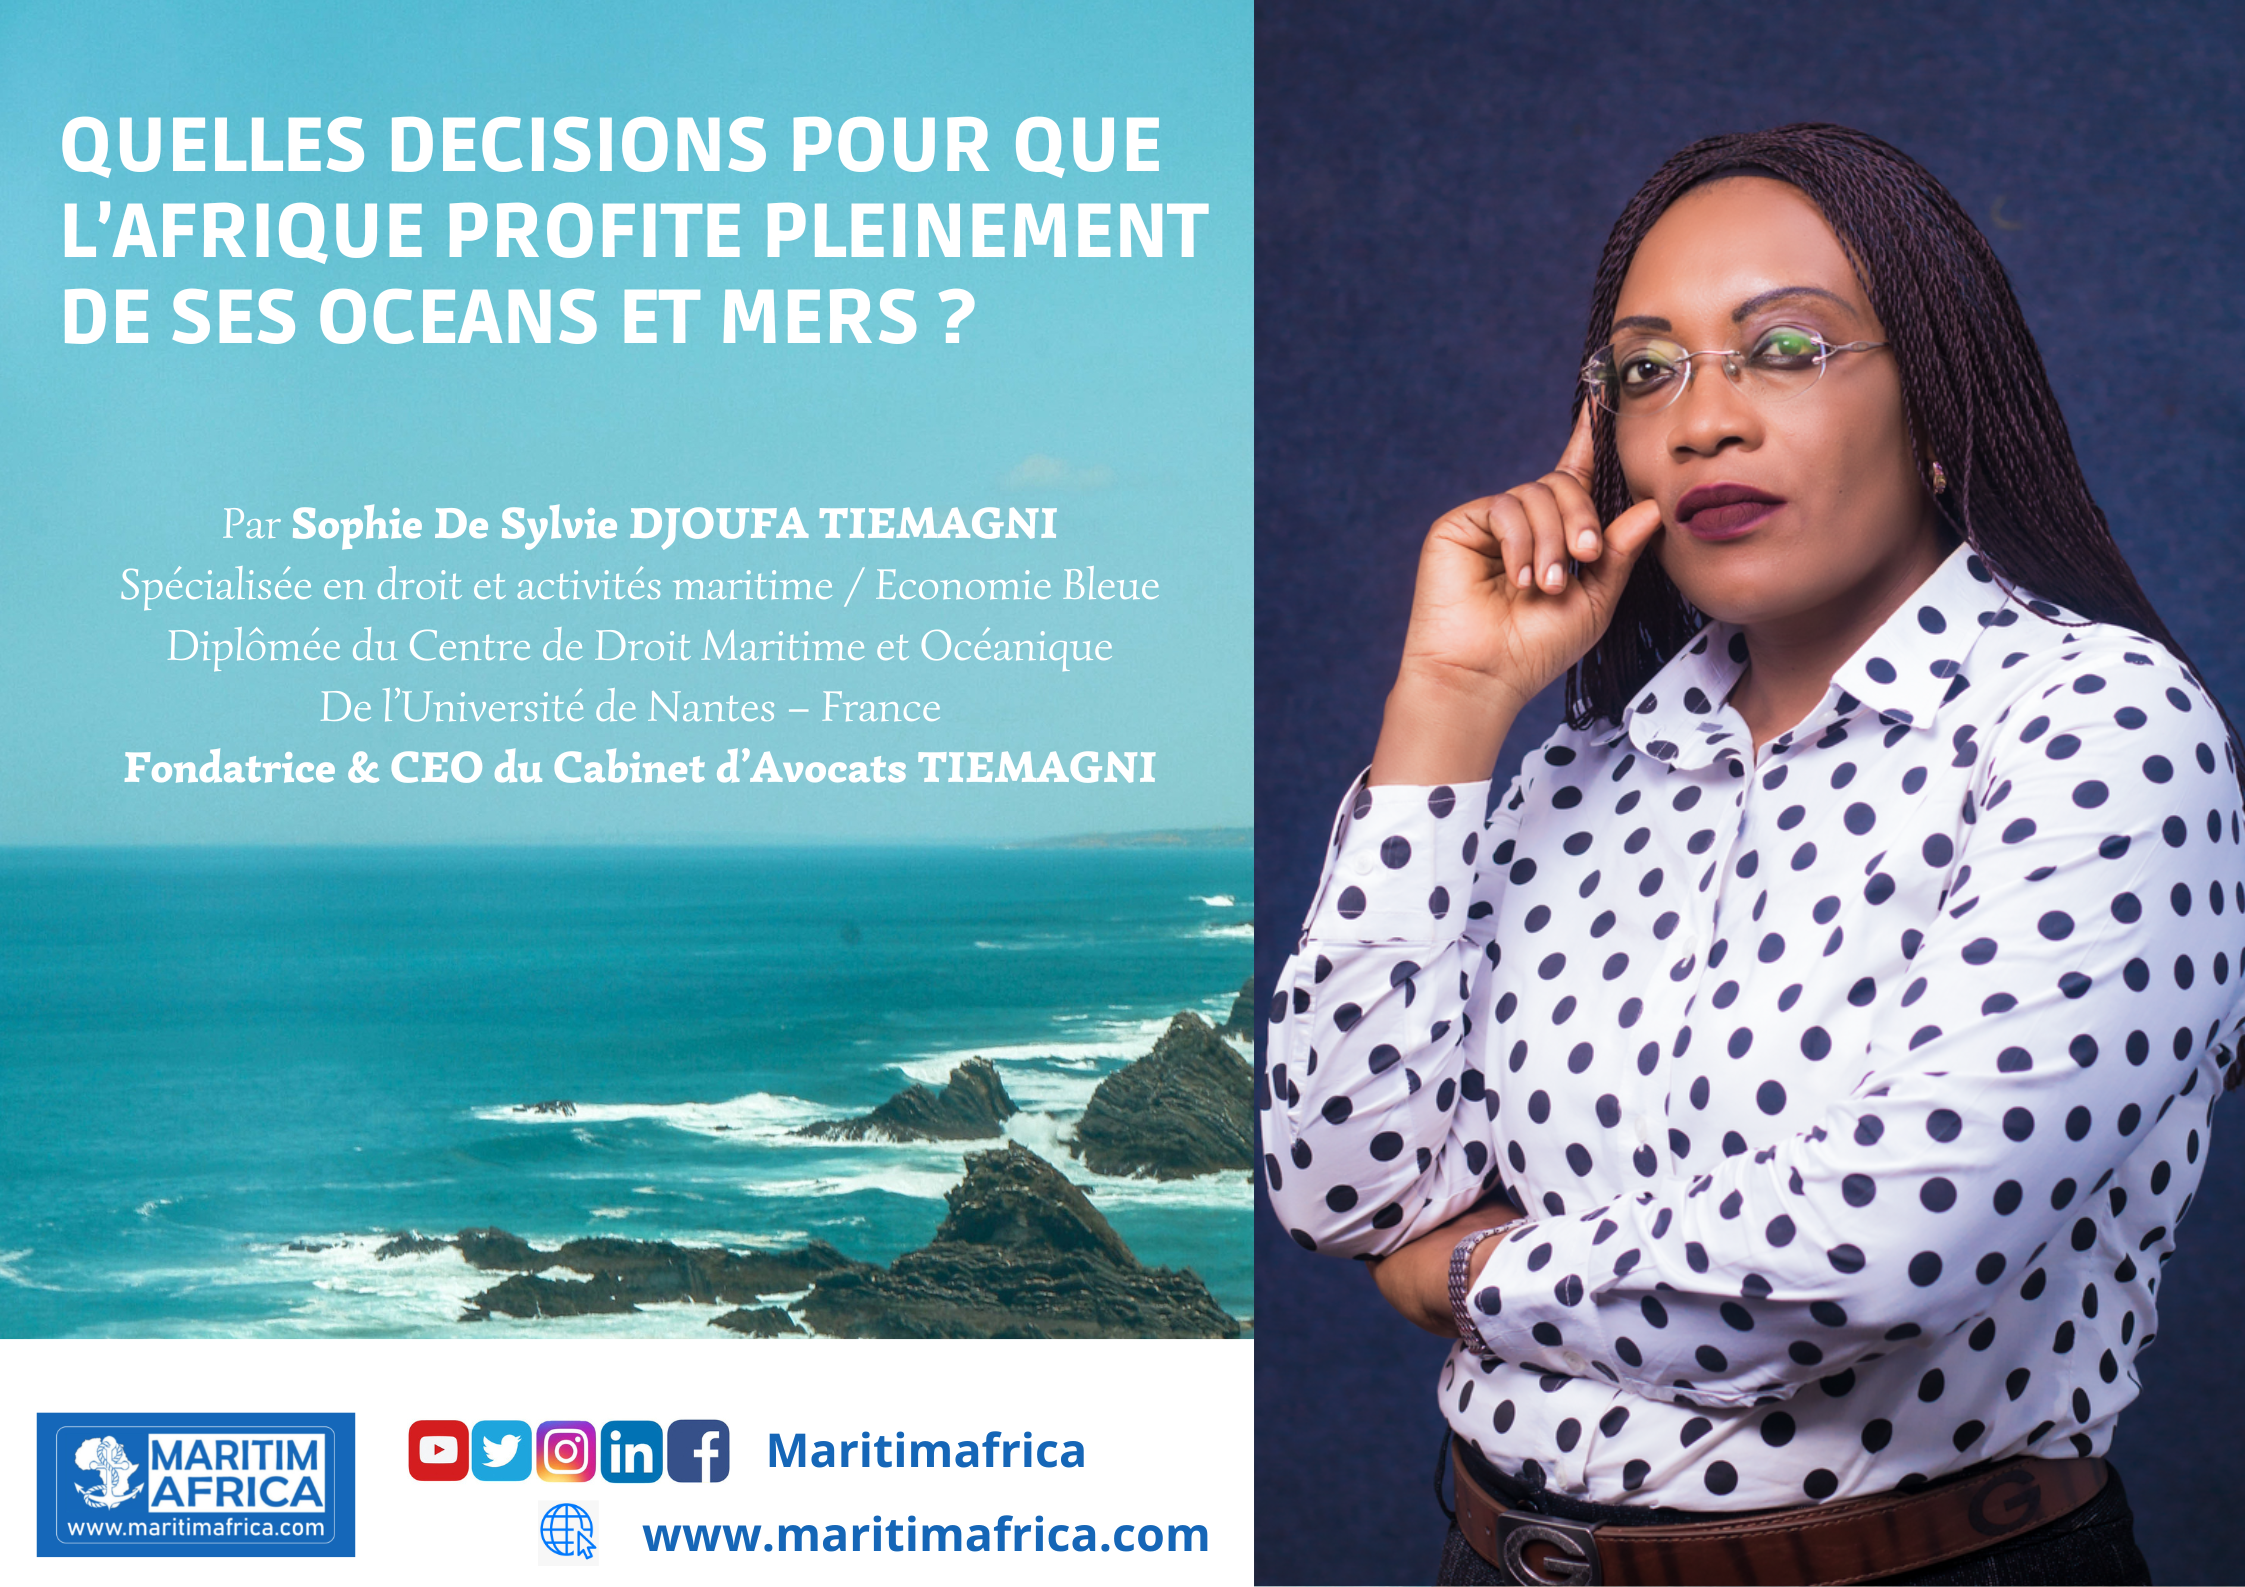 QUELLES DECISIONS POUR QUE L’AFRIQUE PROFITE PLEINEMENT DE SES OCEANS ET MERS ?